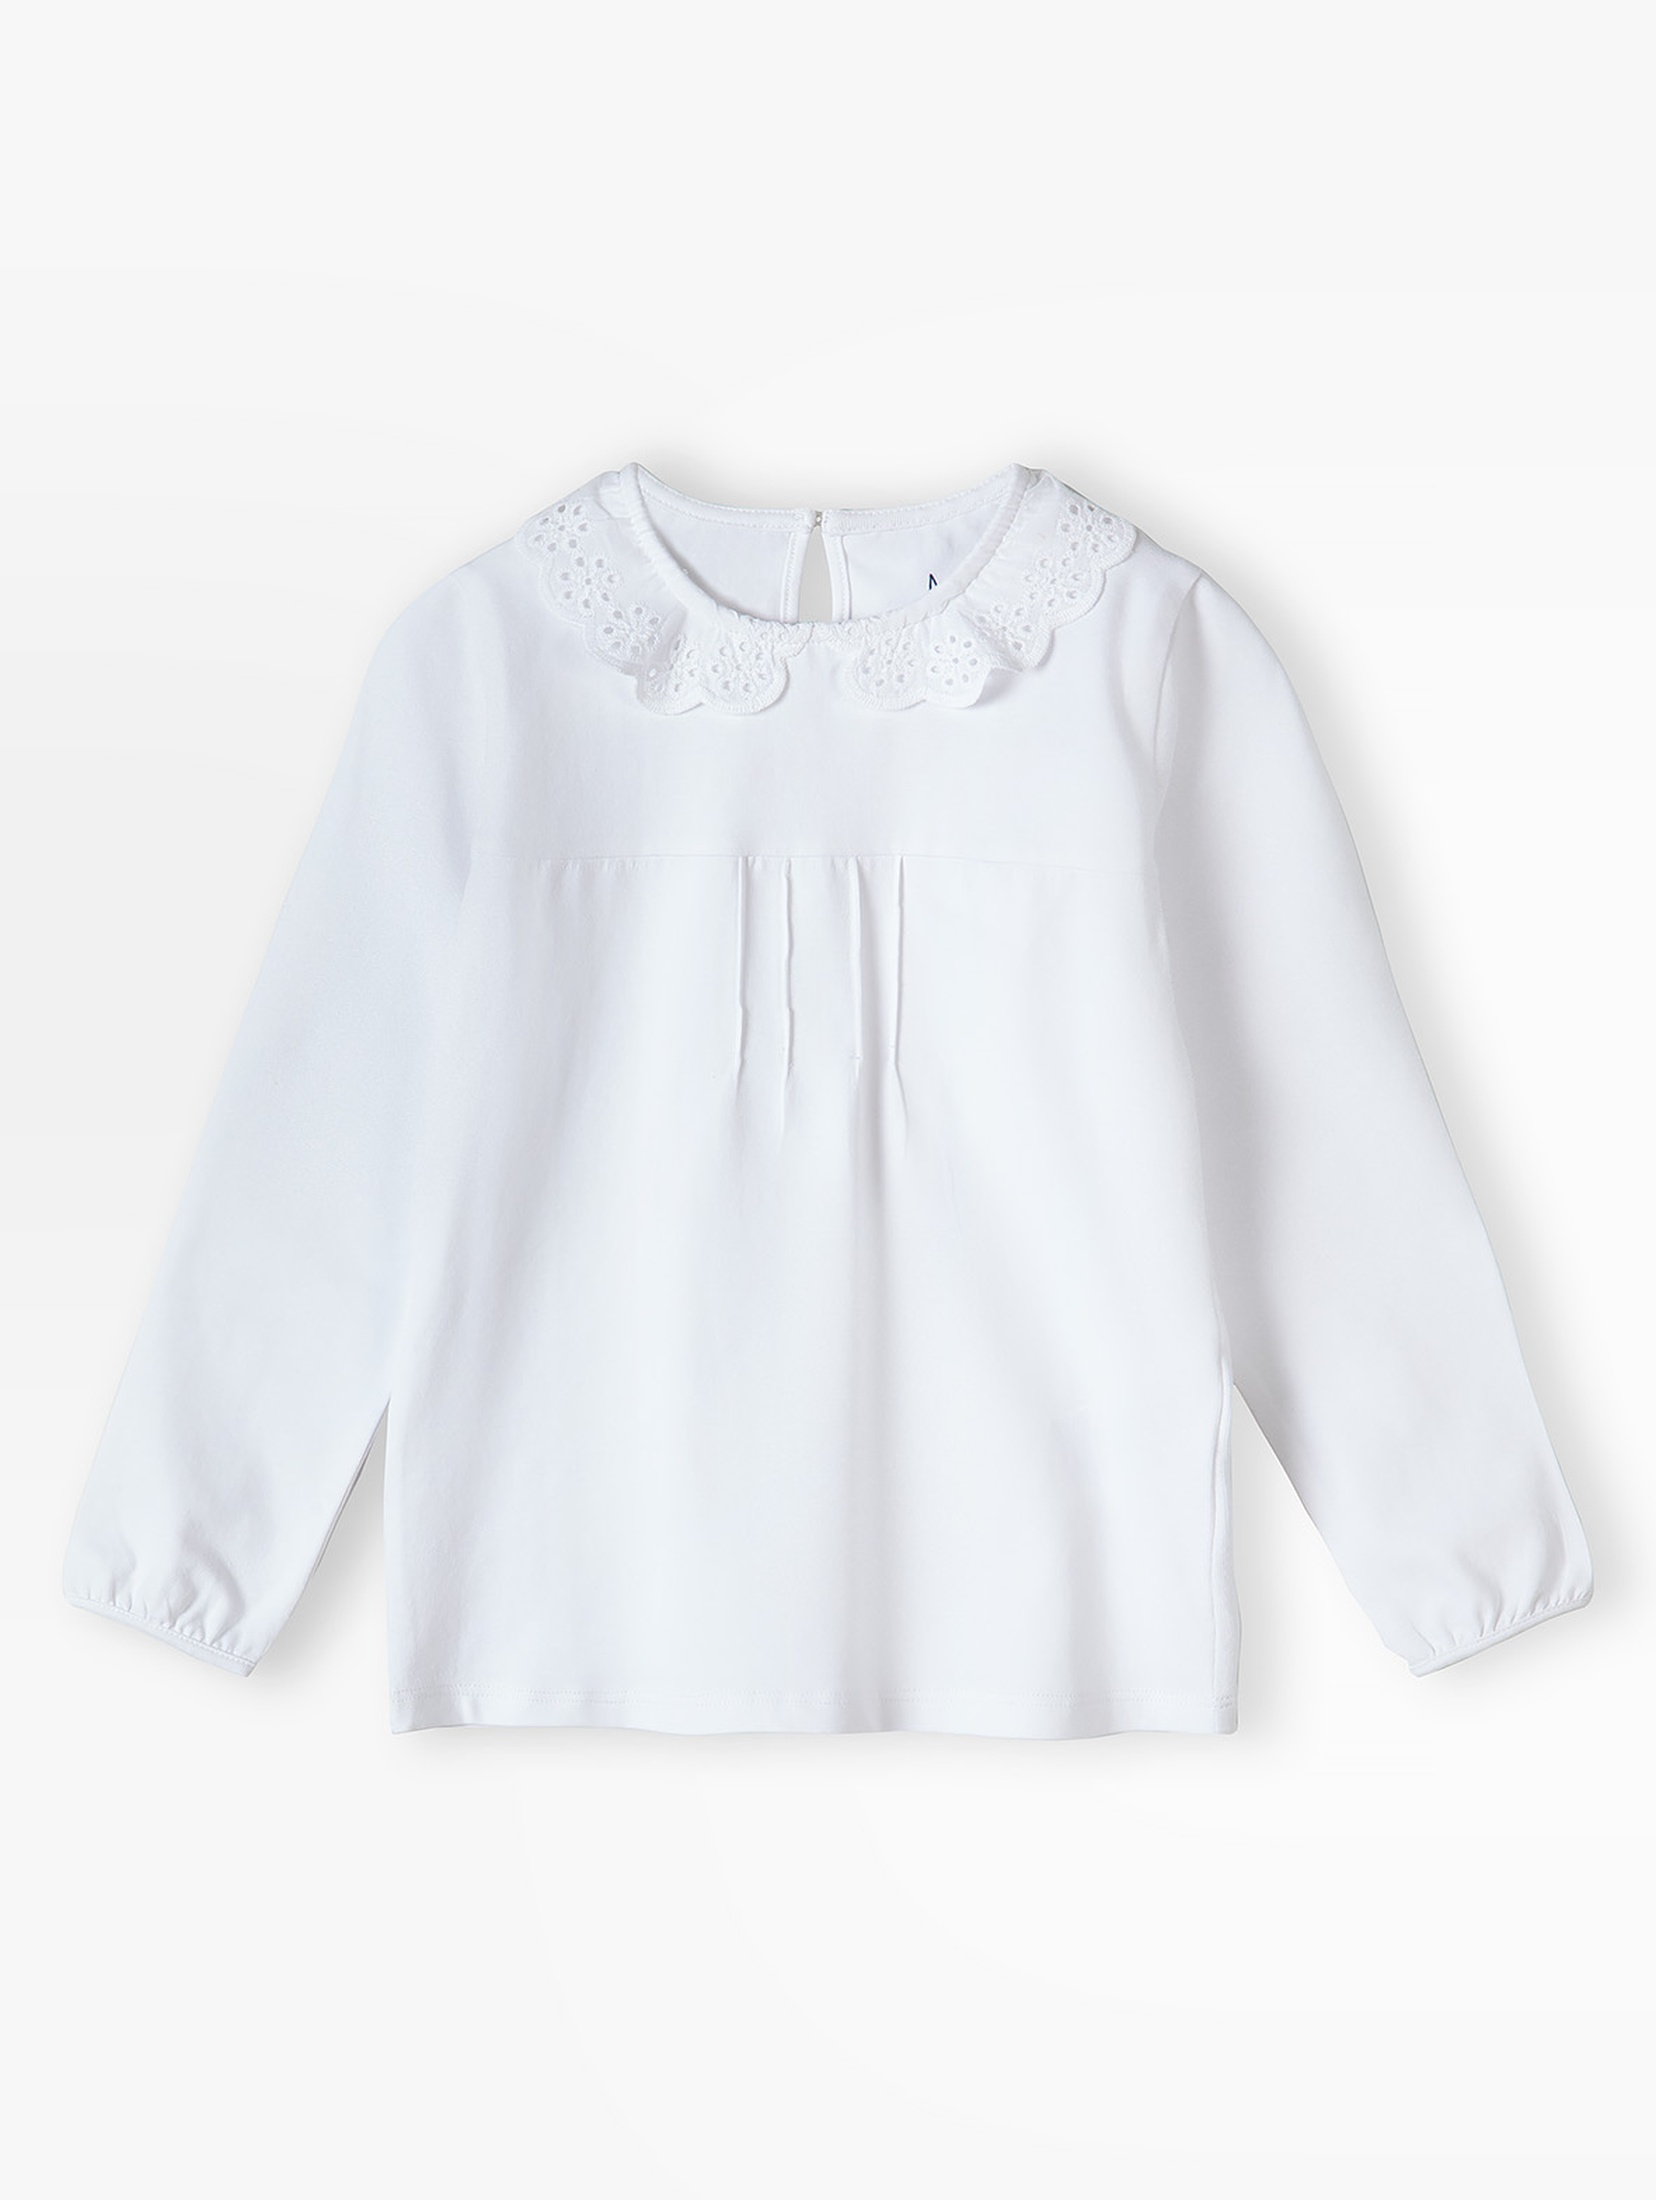 Biała elegancka bluzka z długim rękawem dla dziewczynki